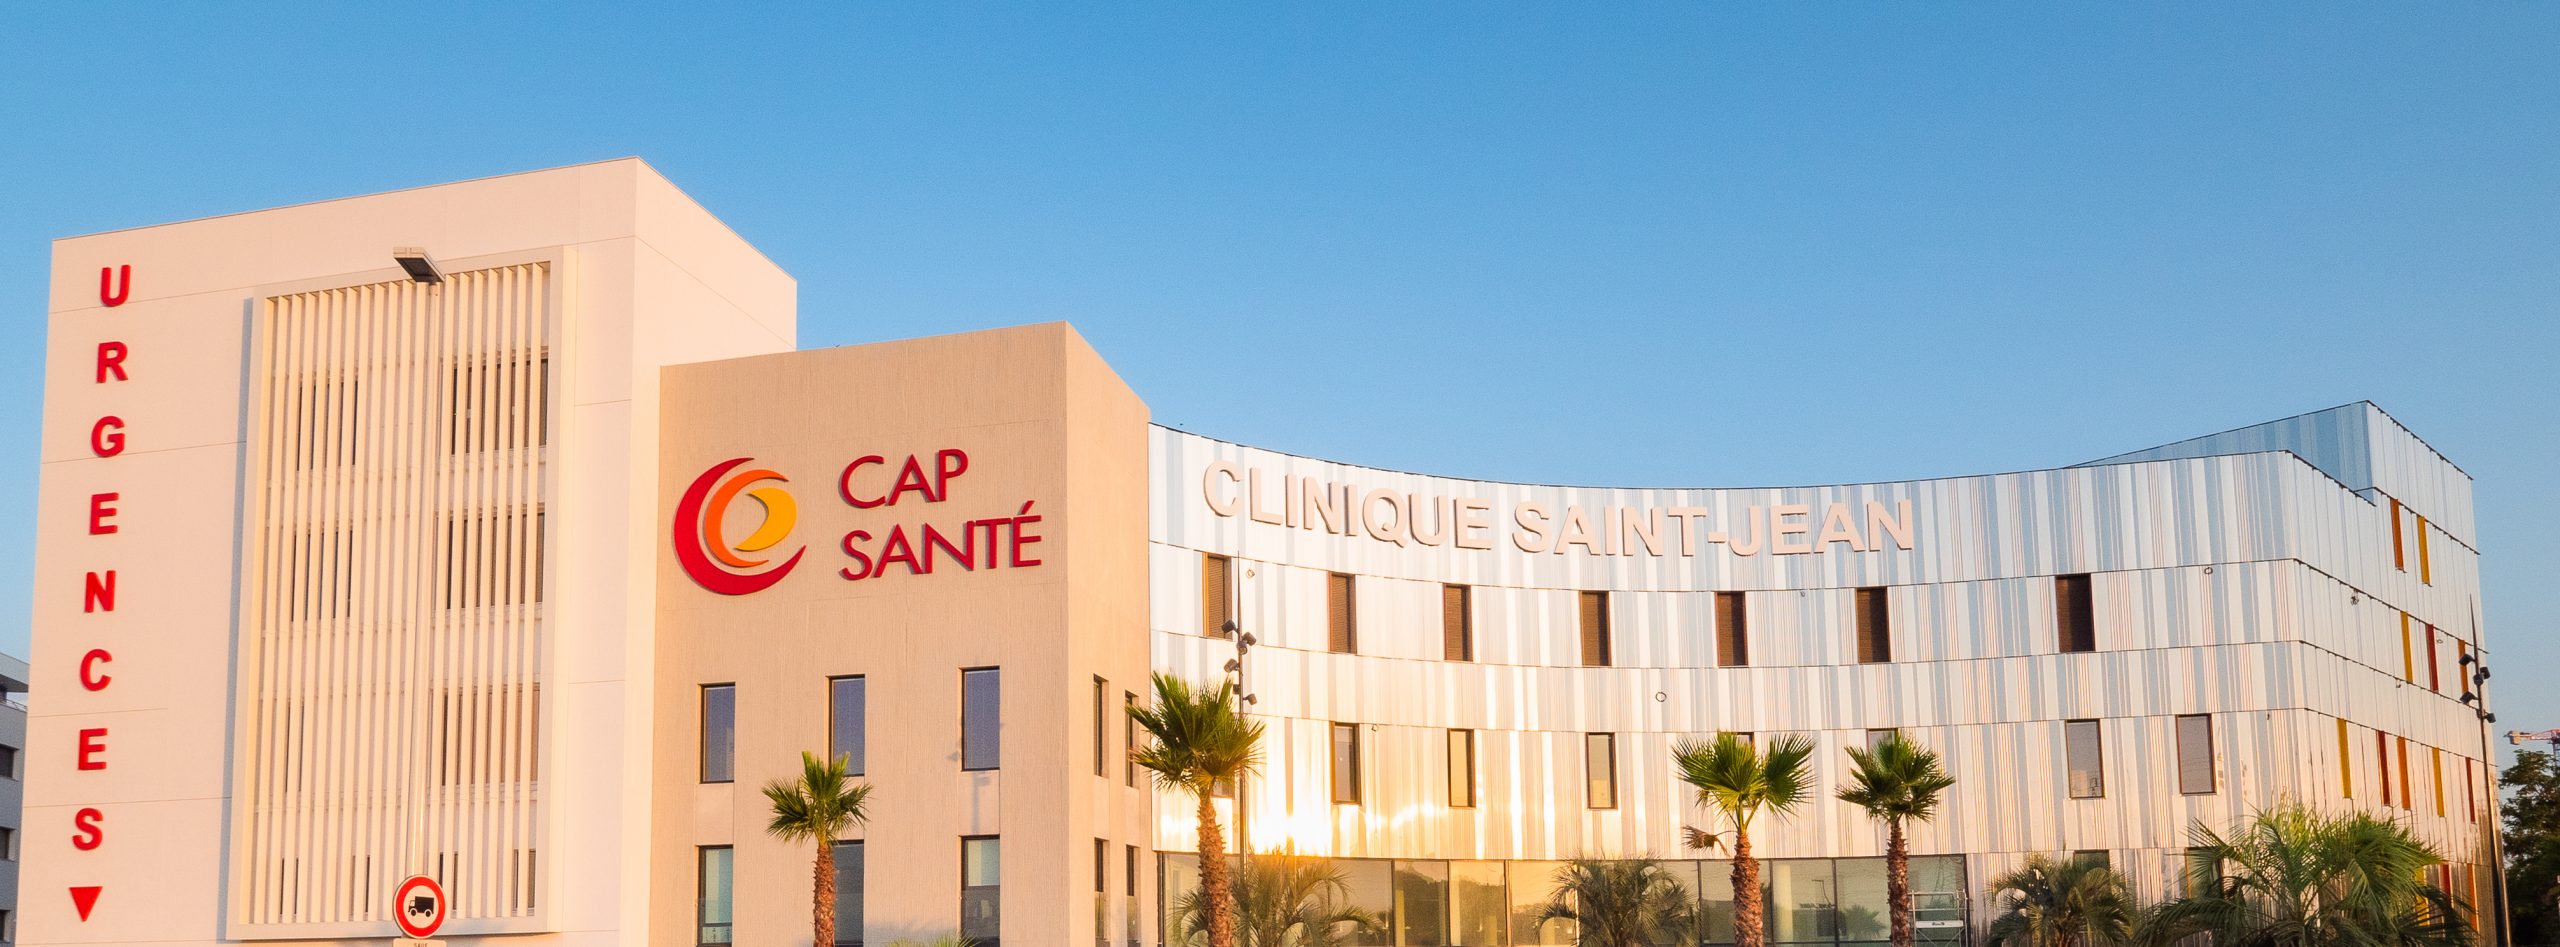 Clinique Saint Jean - Sud de France - Cap santé